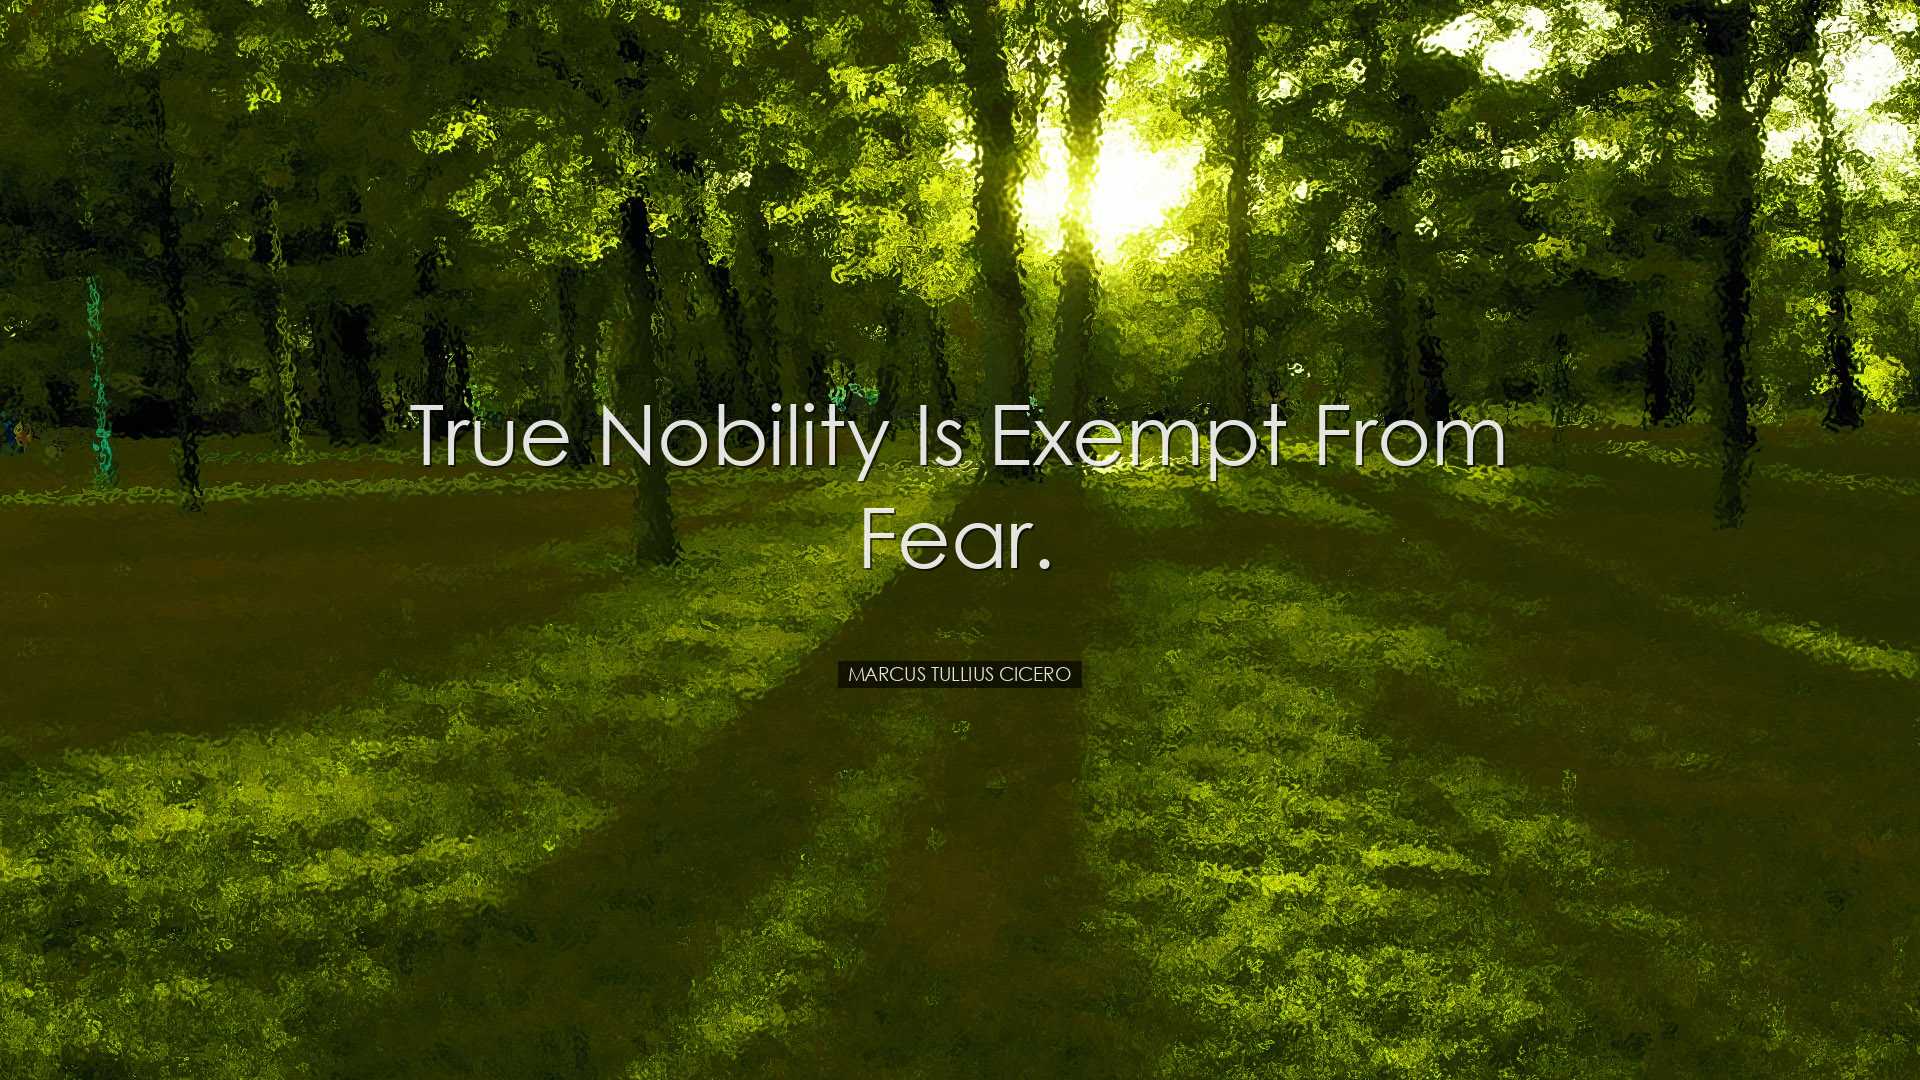 True nobility is exempt from fear. - Marcus Tullius Cicero